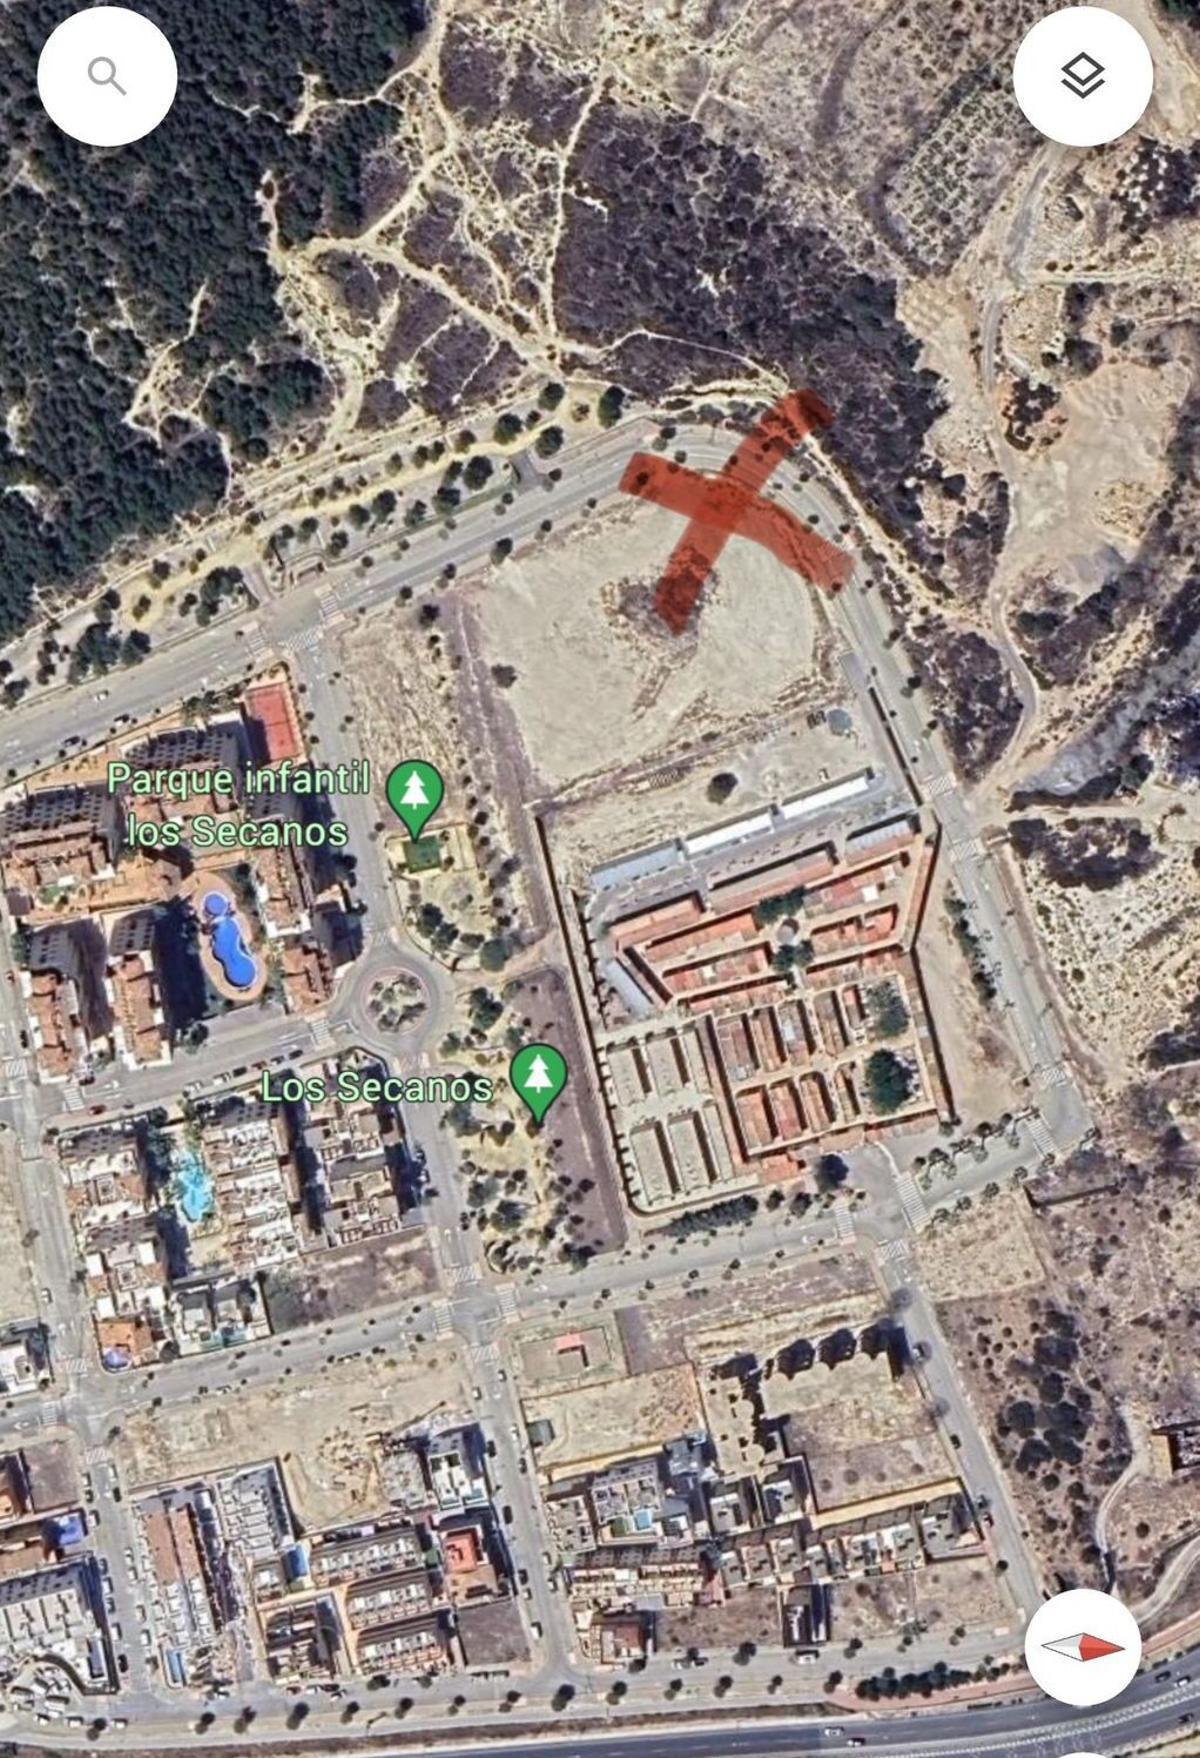 La cruz marca la ubicación en el extremo de la parcela más alejado del cementerio y las viviendas